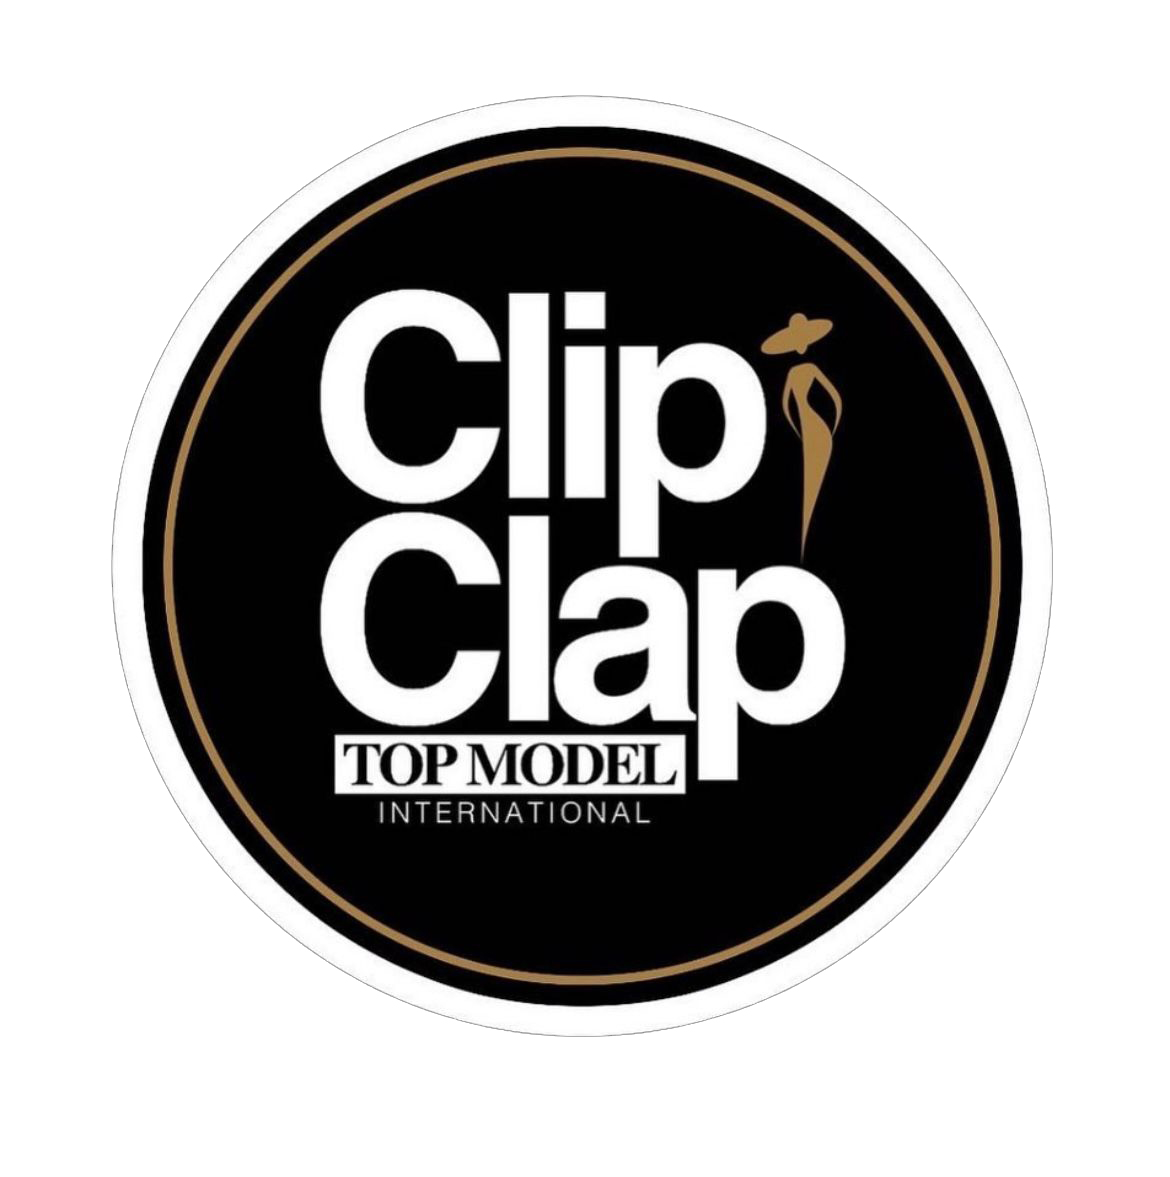 CLIP CLAP TOP MODEL INTERNATIONAL FROM CÔTE D'IVOIRE